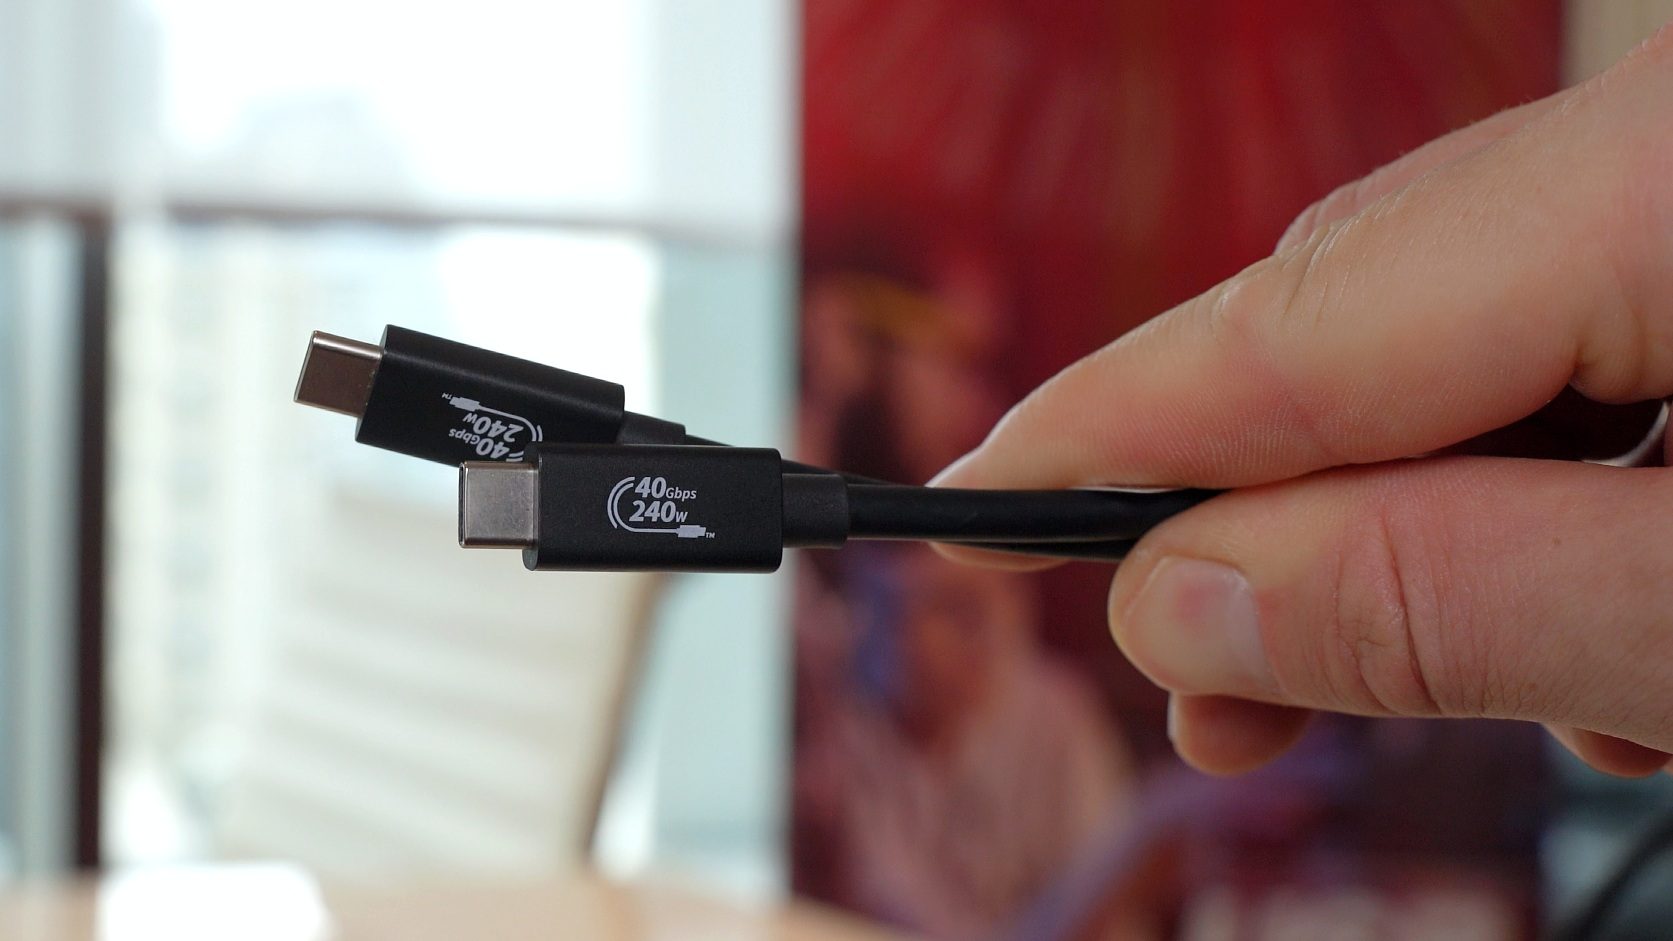 USB-C-Kabel mit Branding "240W" und "40 Gbps".